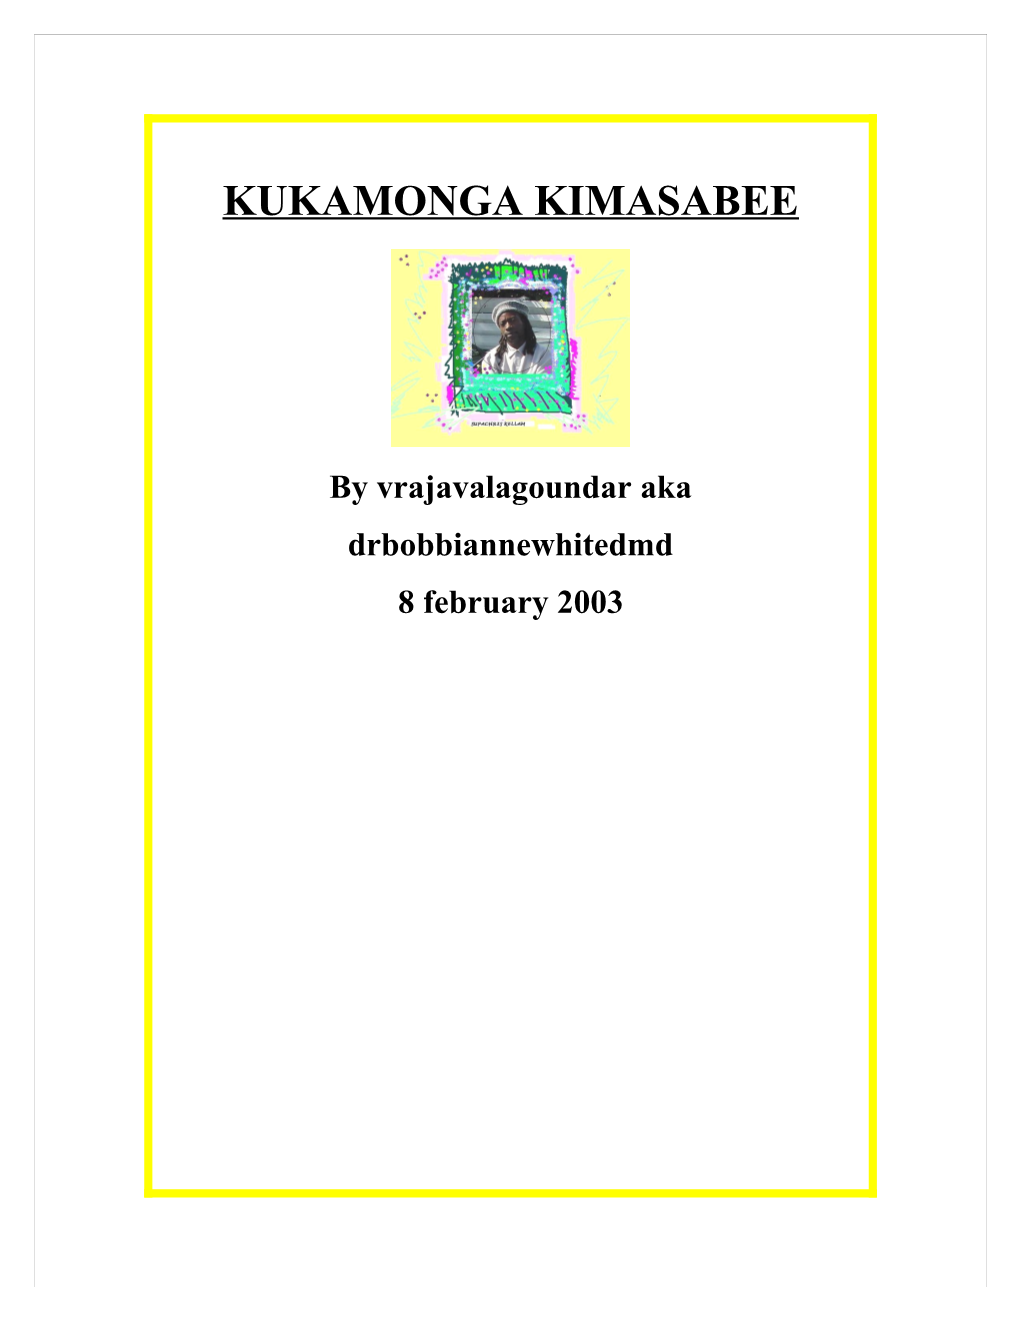 Kukamonga Kimasabee